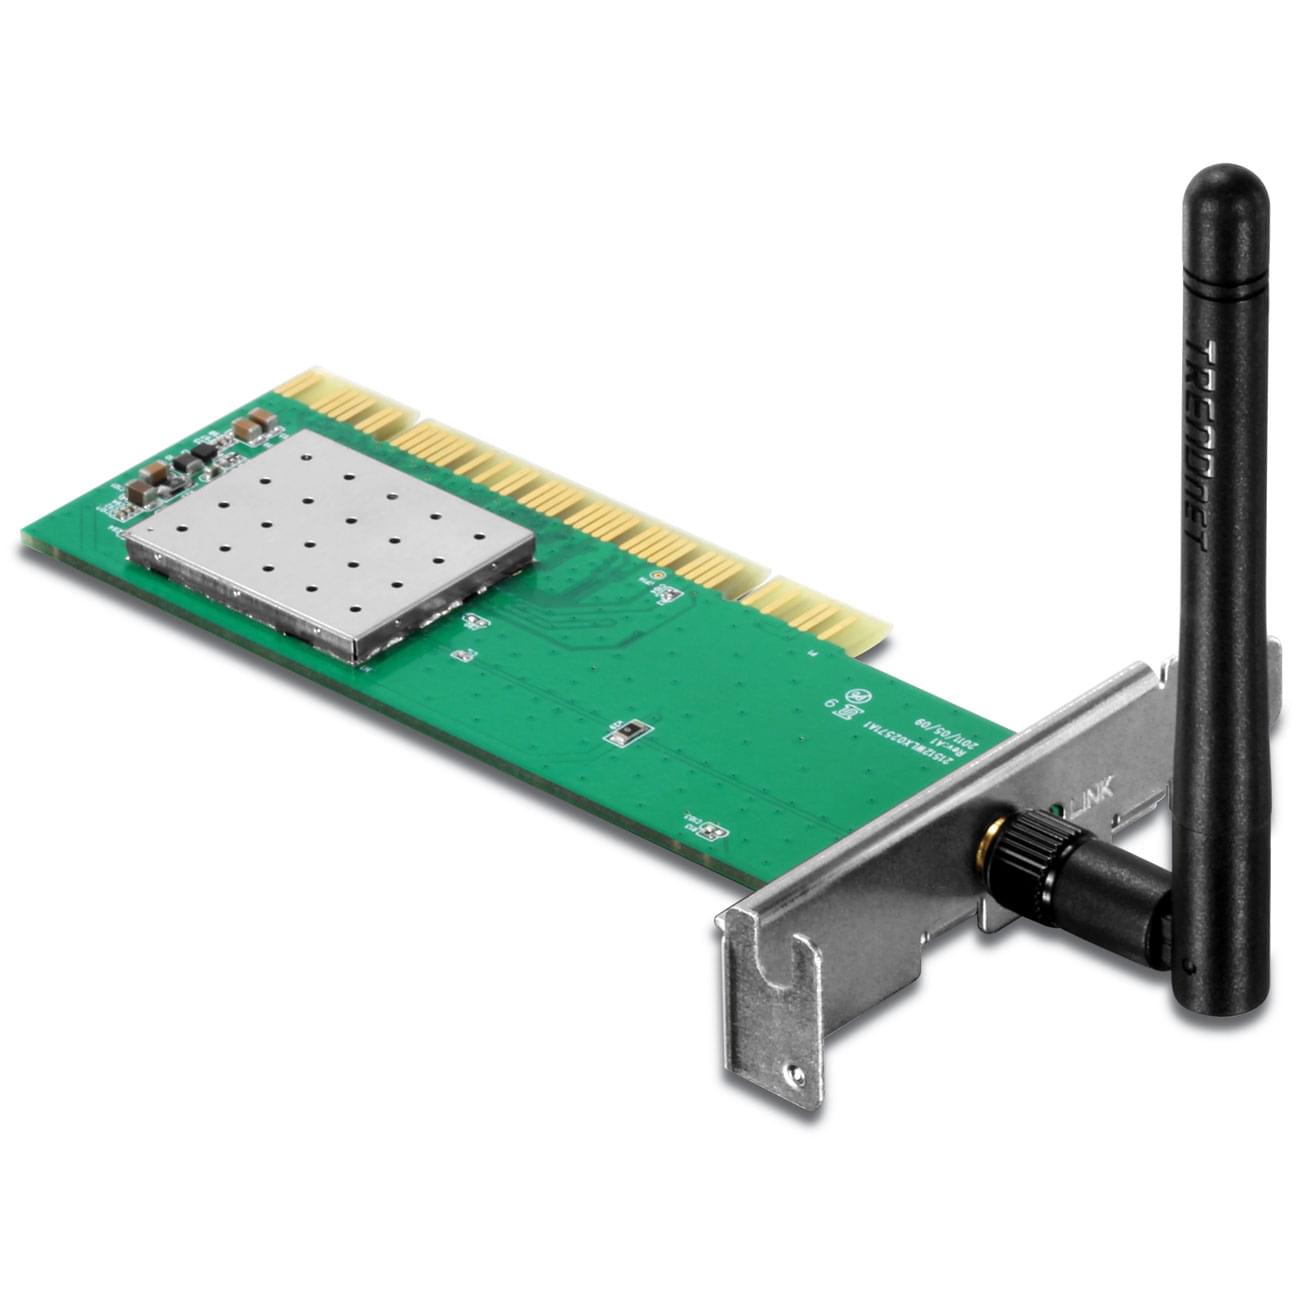 TrendNet PCI WiFi 802.11N (150Mbps) Low Profile -TEW-703PIL - Carte réseau - 0